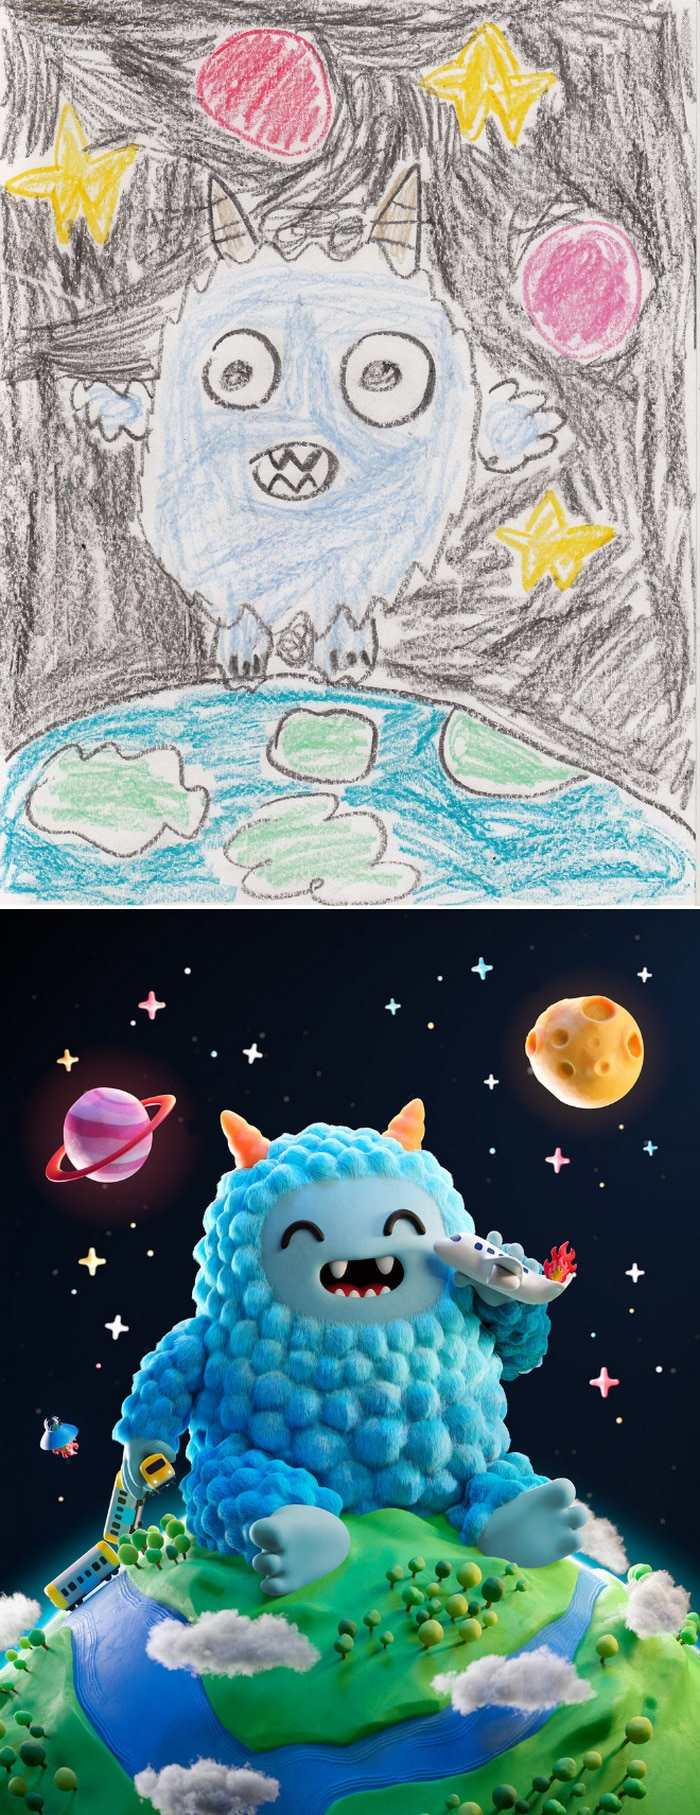 Projeto Monstro - Crianças desenham monstros e artistas recriam com sua arte 8